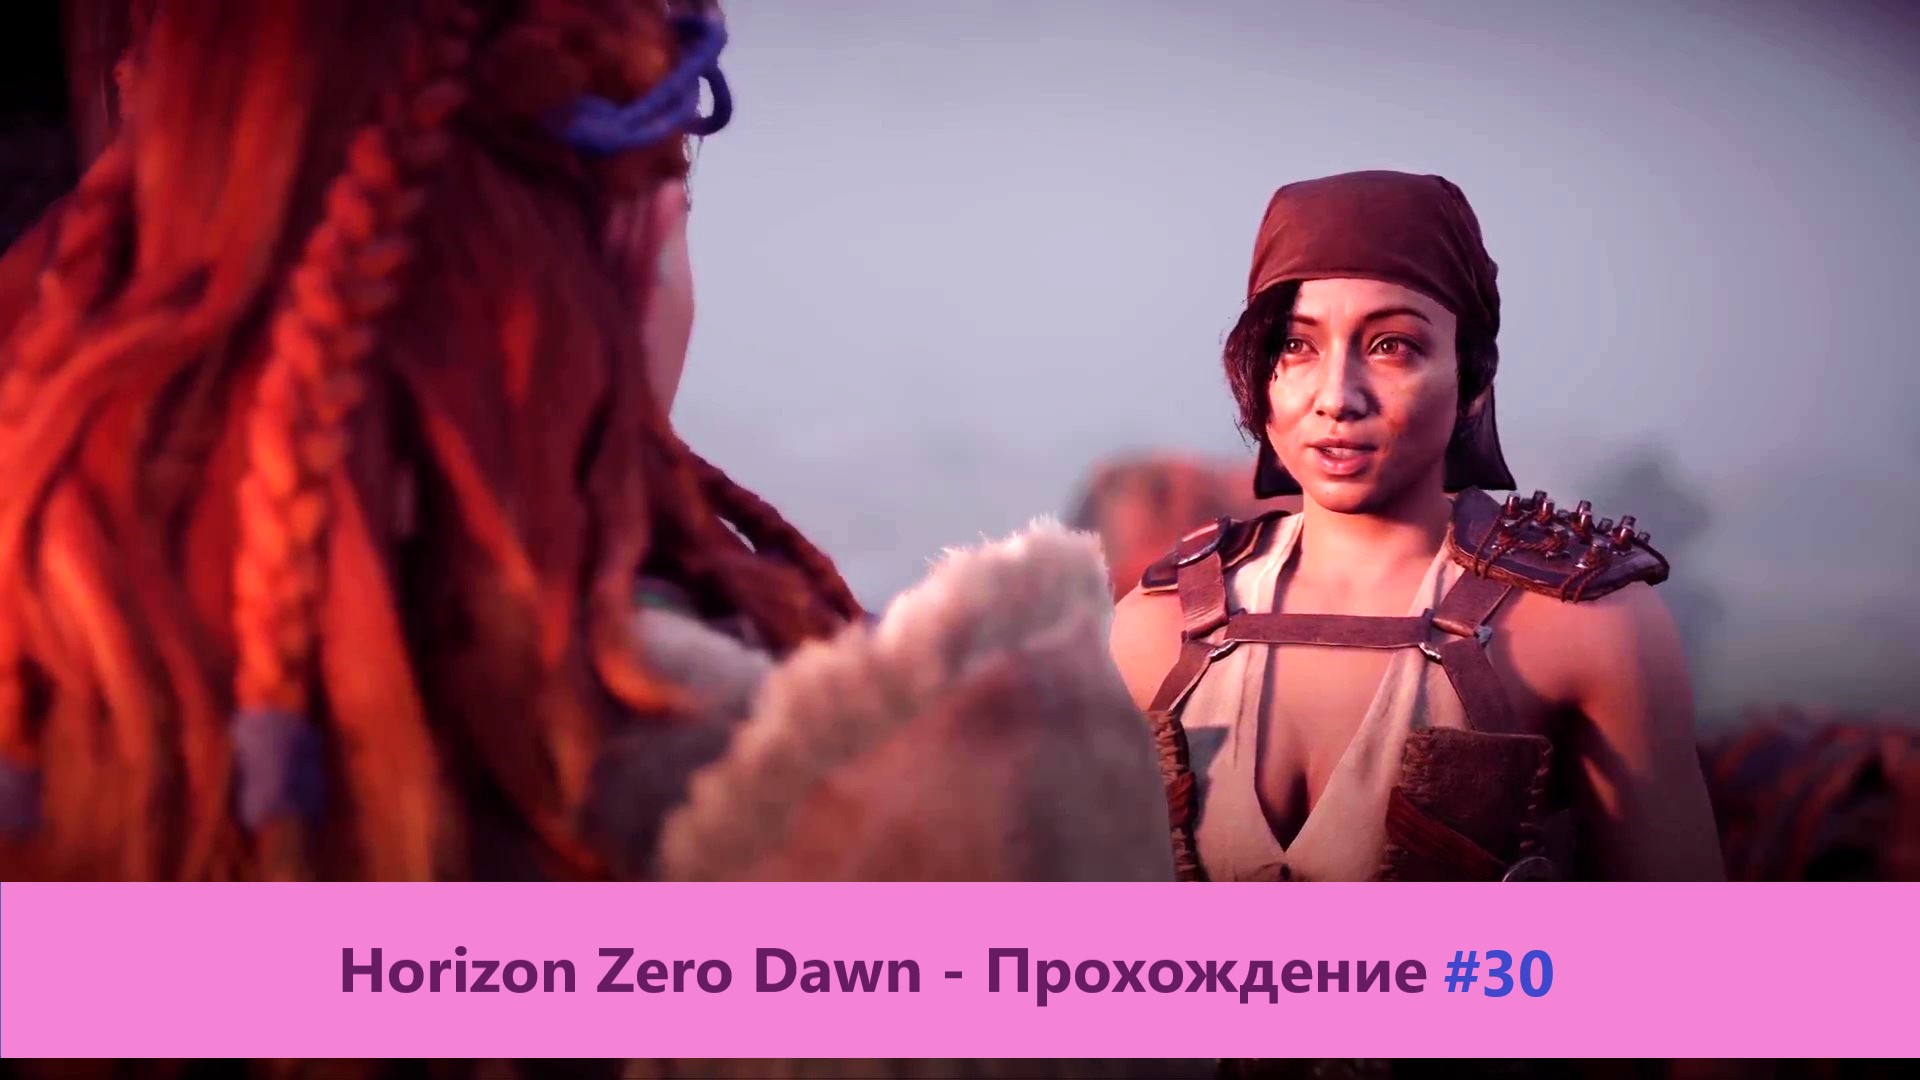 Horizon Zero Dawn - Прохождение #30